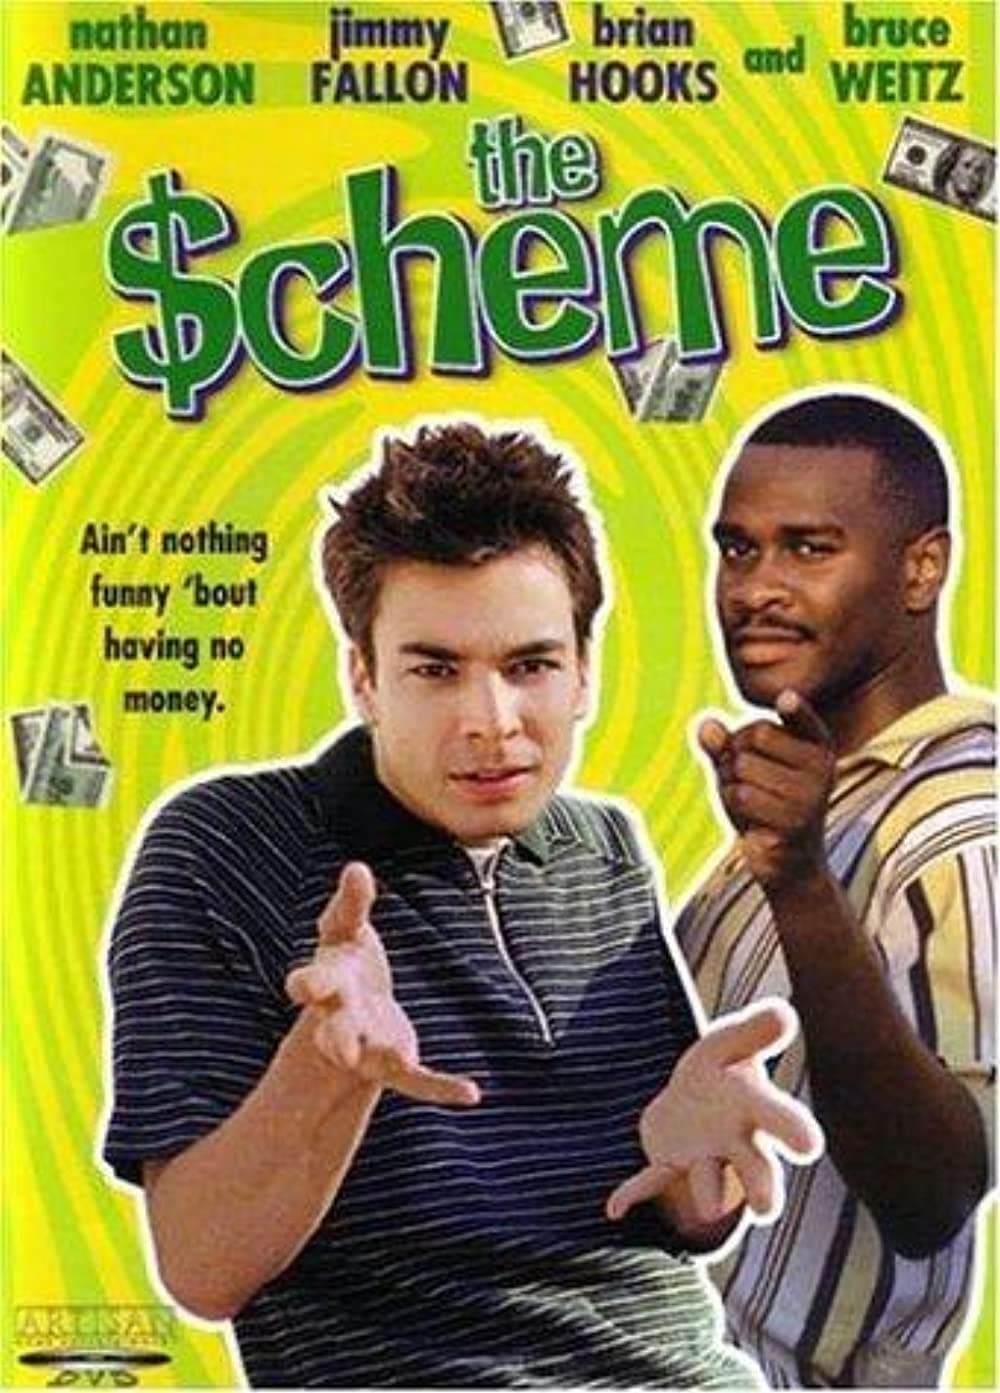 The $cheme